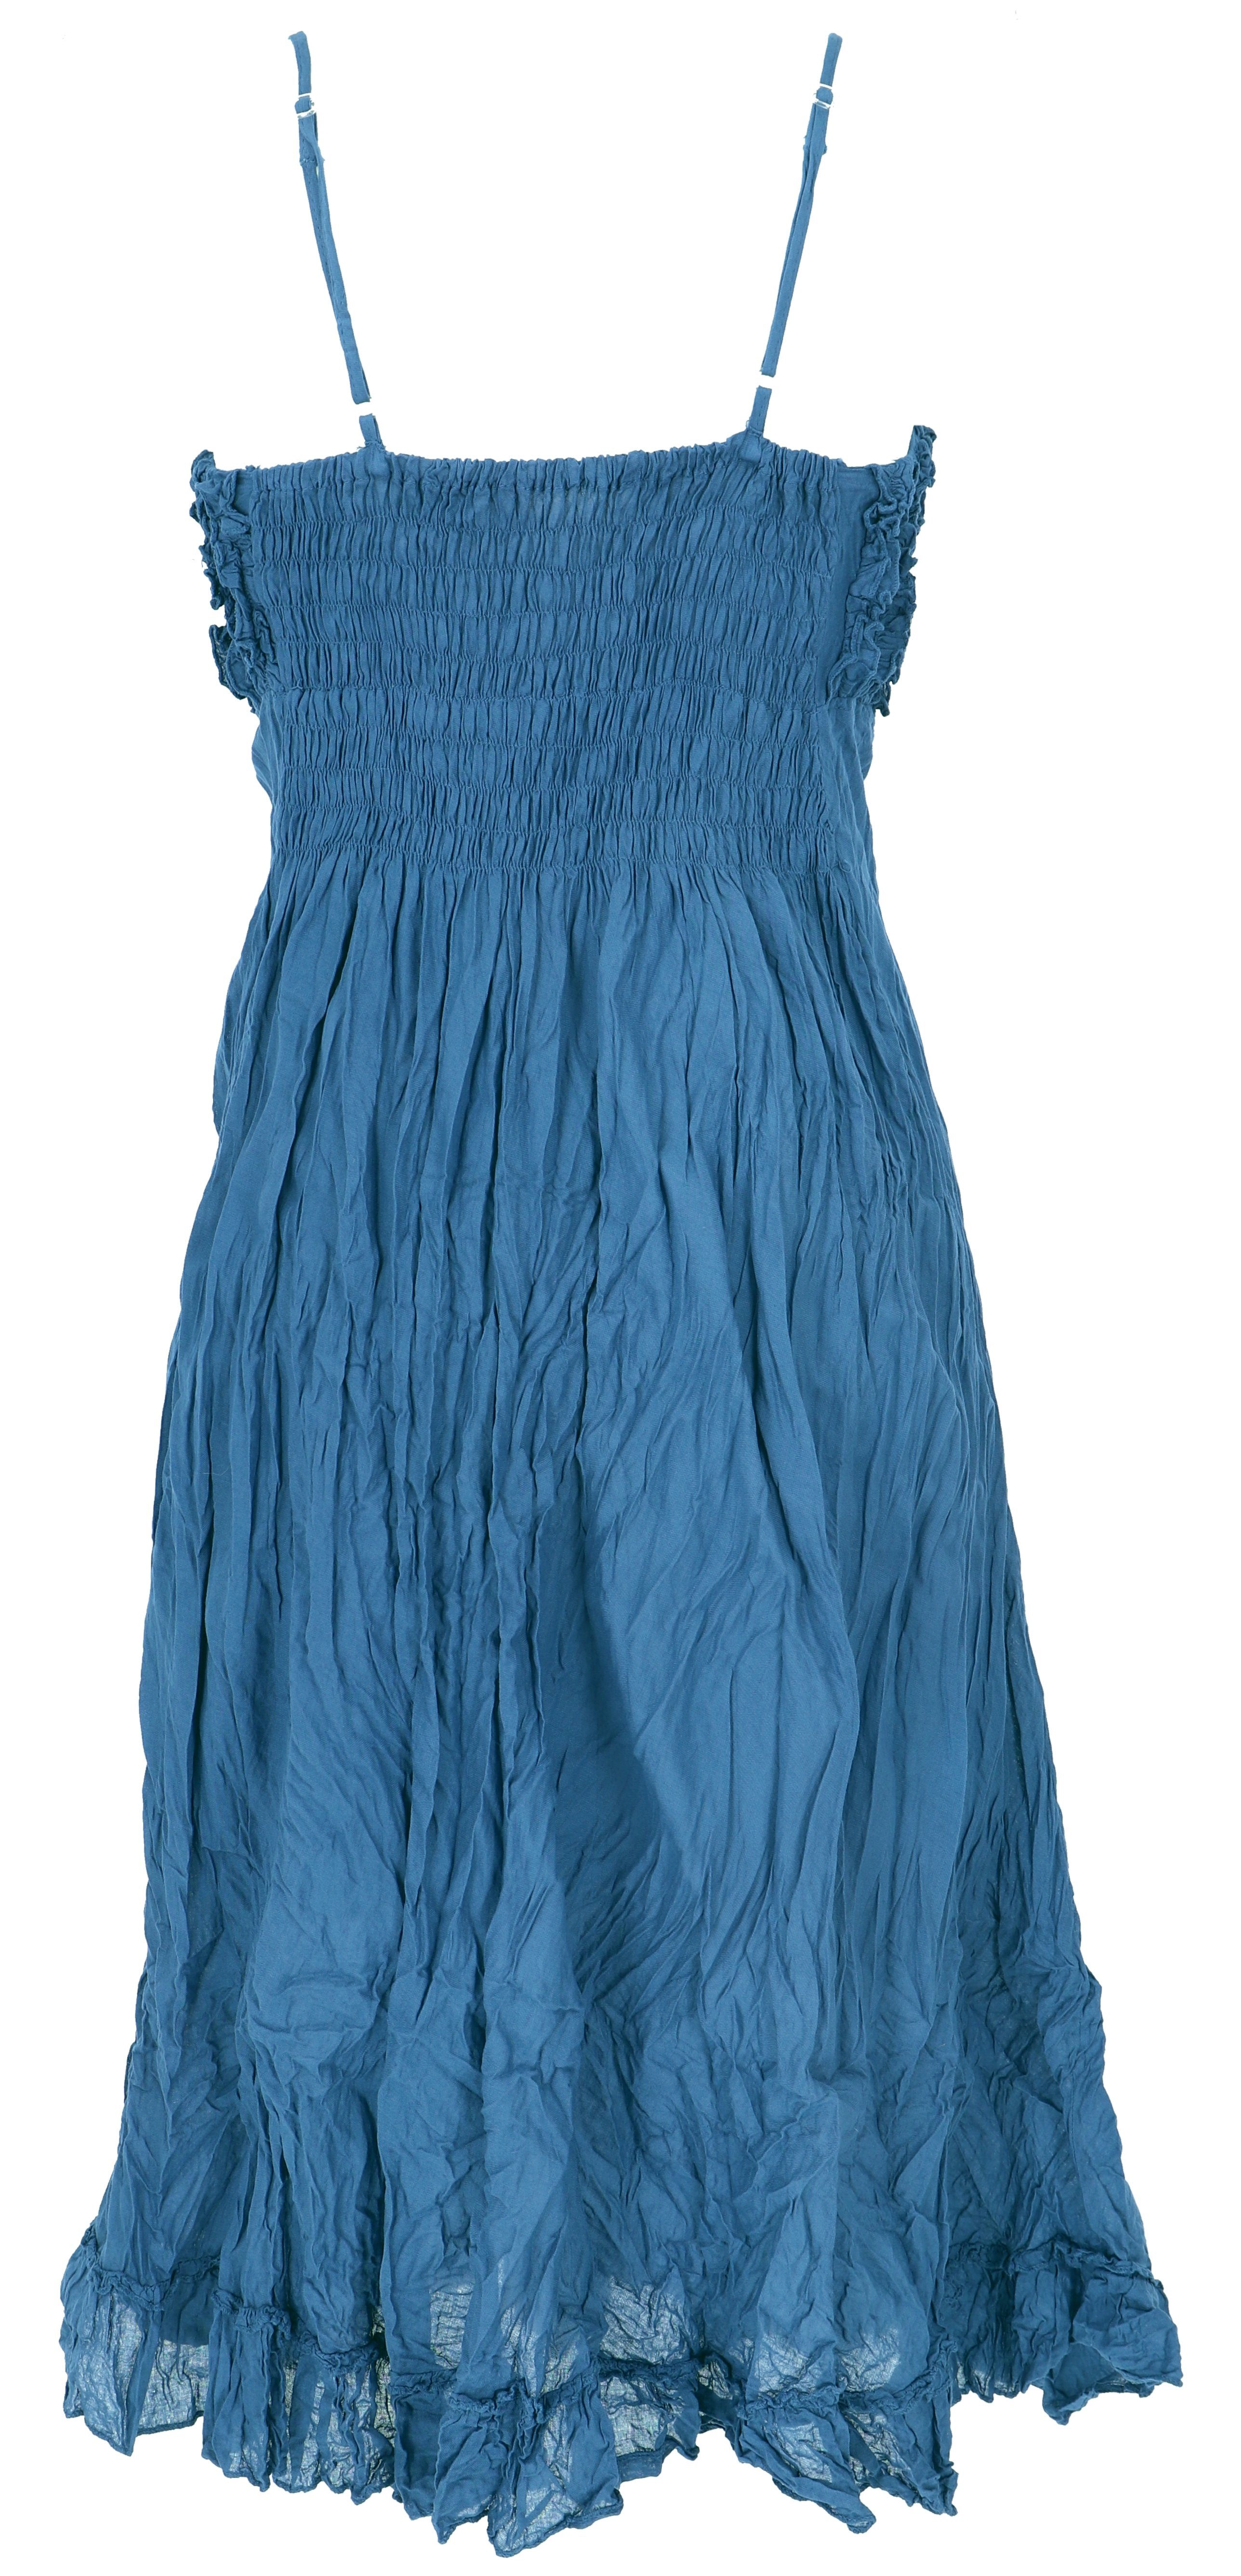 alternative Krinkelkleid,.. luftiges Sommerkleid, Guru-Shop blau Midikleid Bekleidung Boho